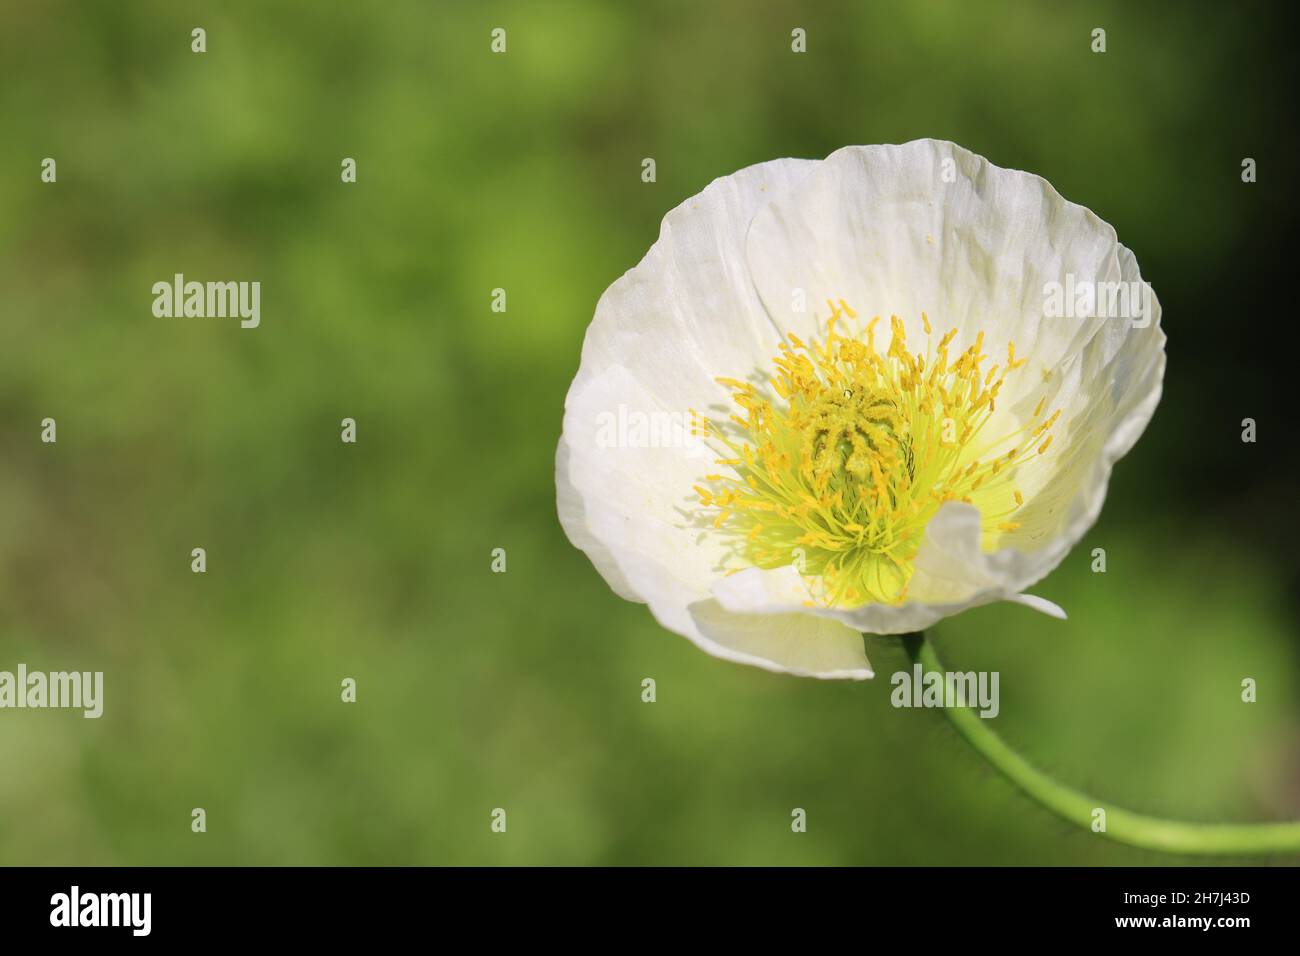 primer plano de una bonita flor de amapola blanca, espacio de copia Foto de stock